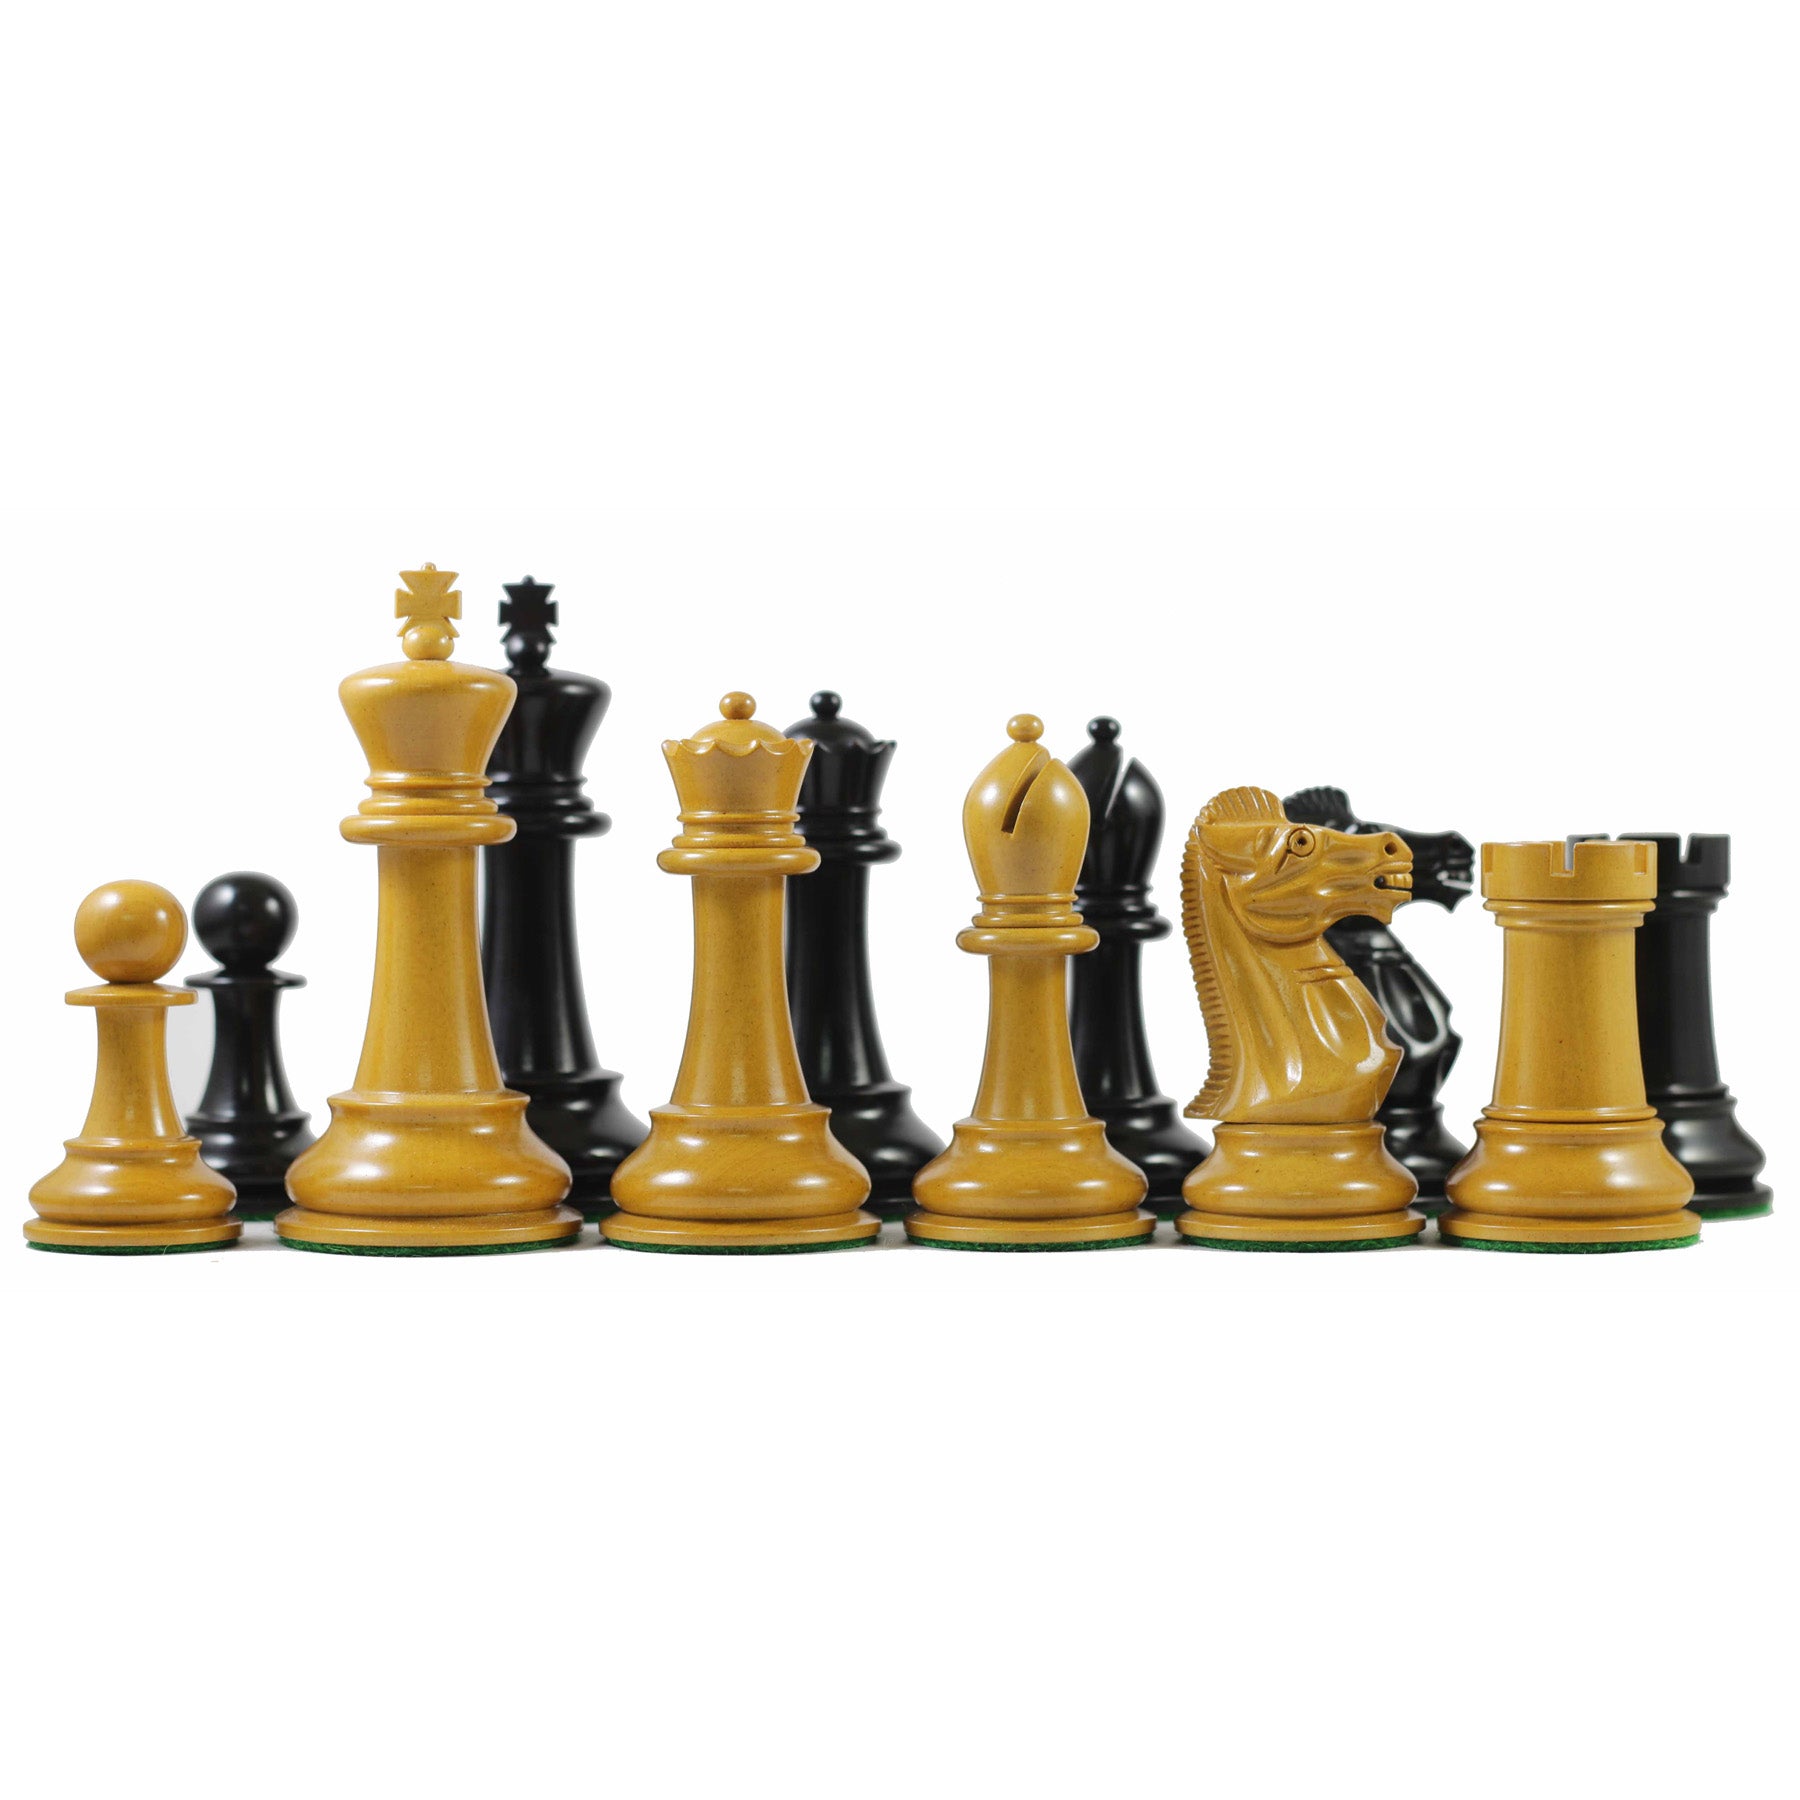 Golden Chess Club OL - Chess Club 